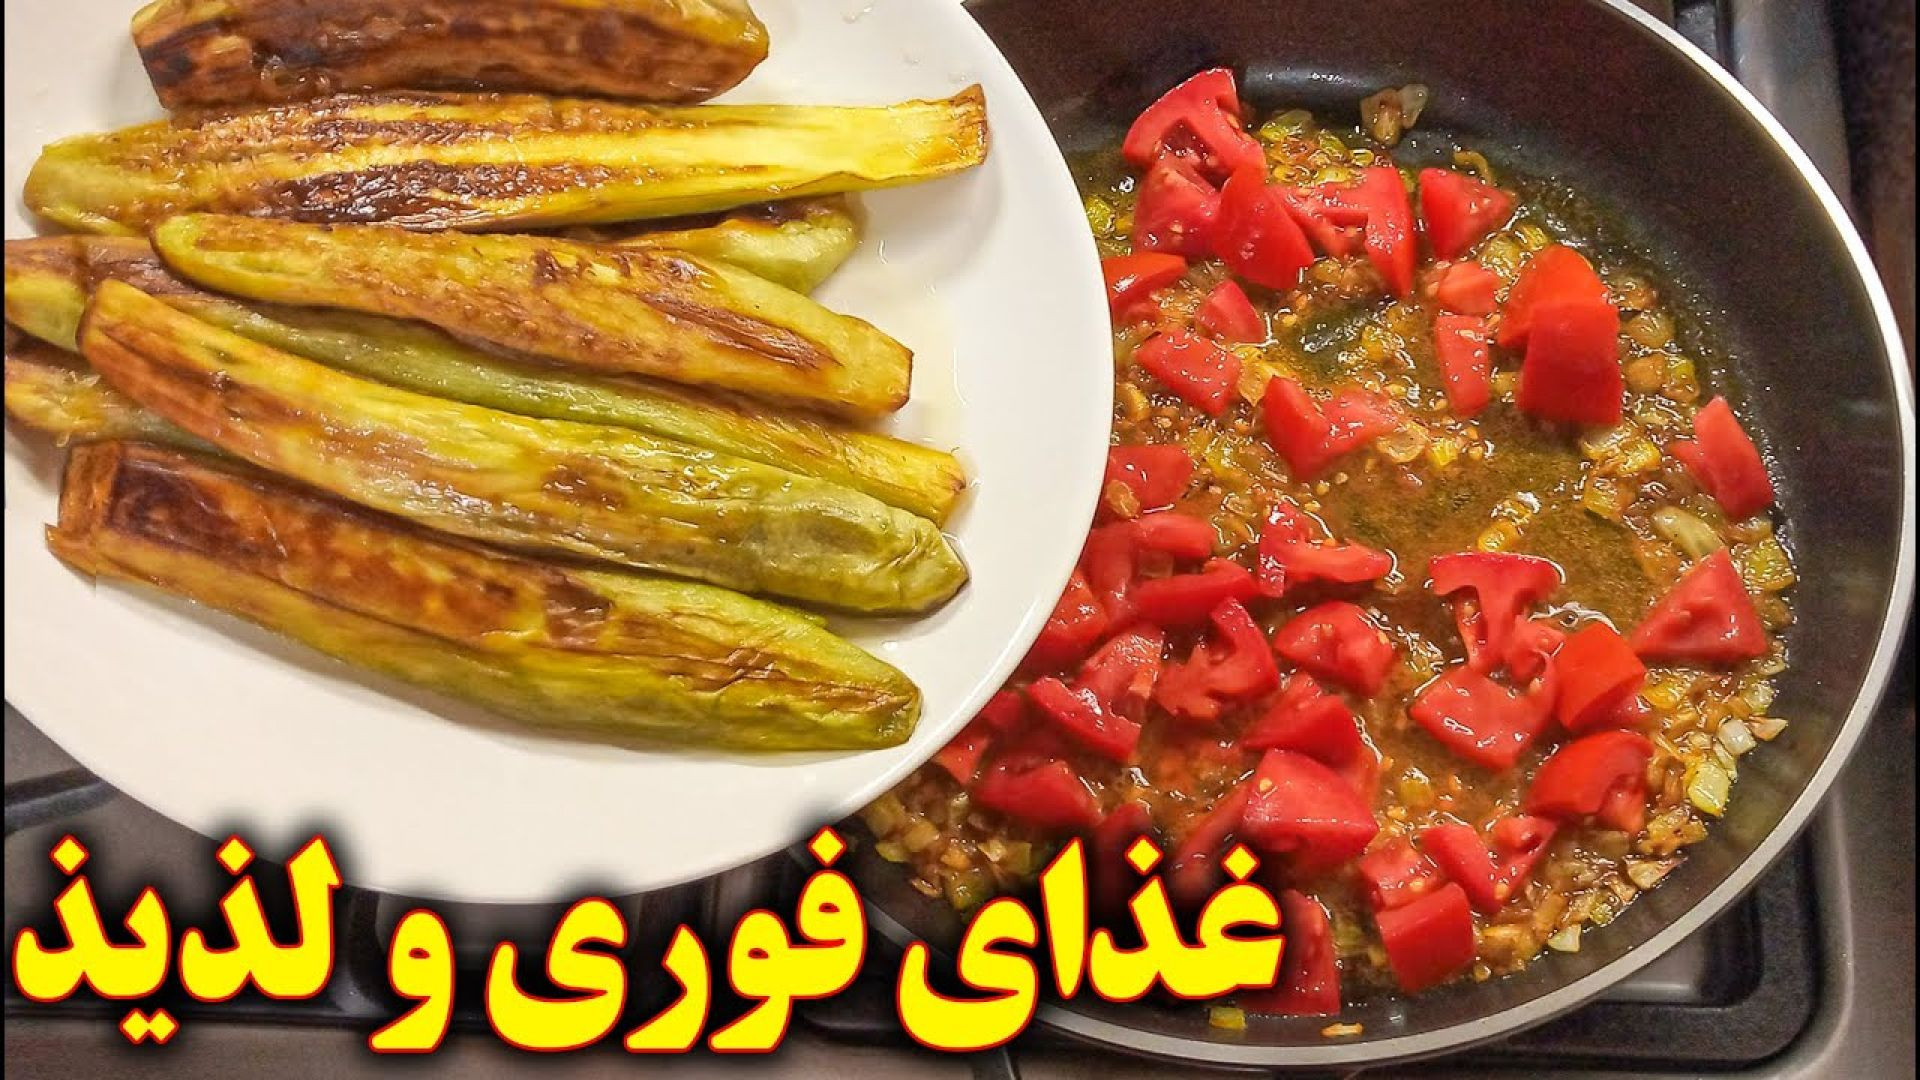 غذای آسان با بادمجان سرخ کرده آموزش آشپزی ایرانی ( یوتیوب )